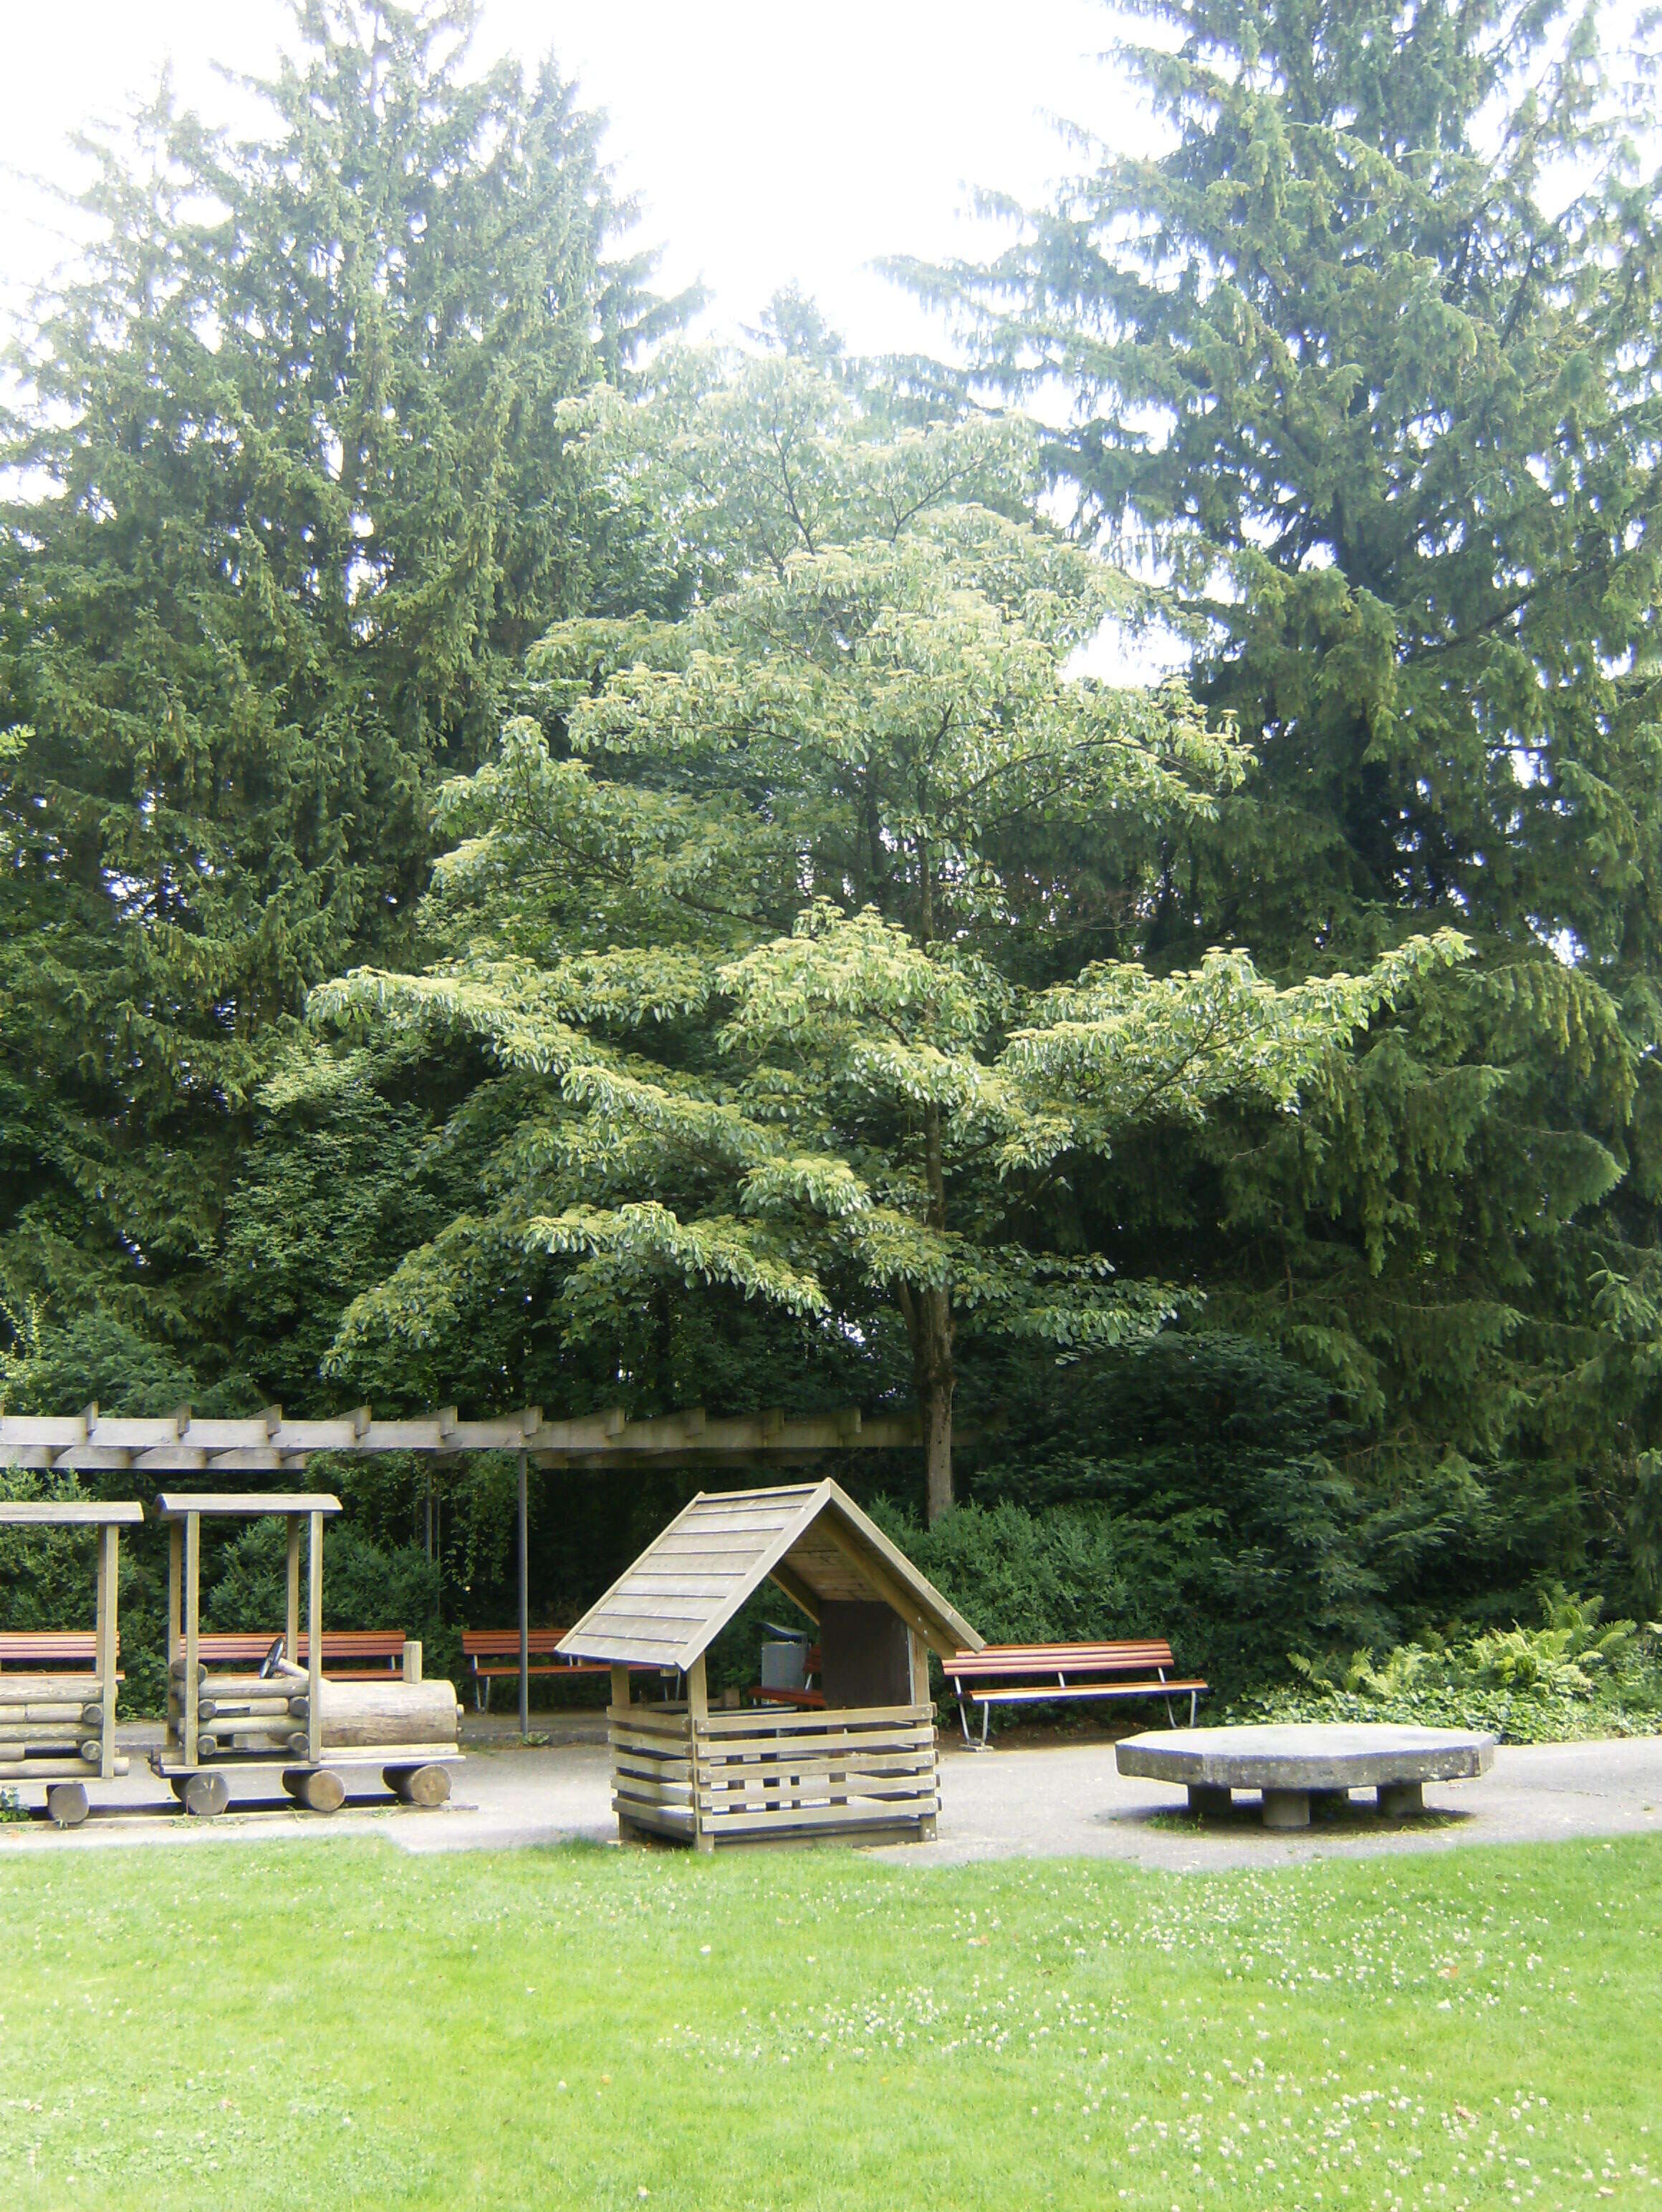 Image of giant dogwood